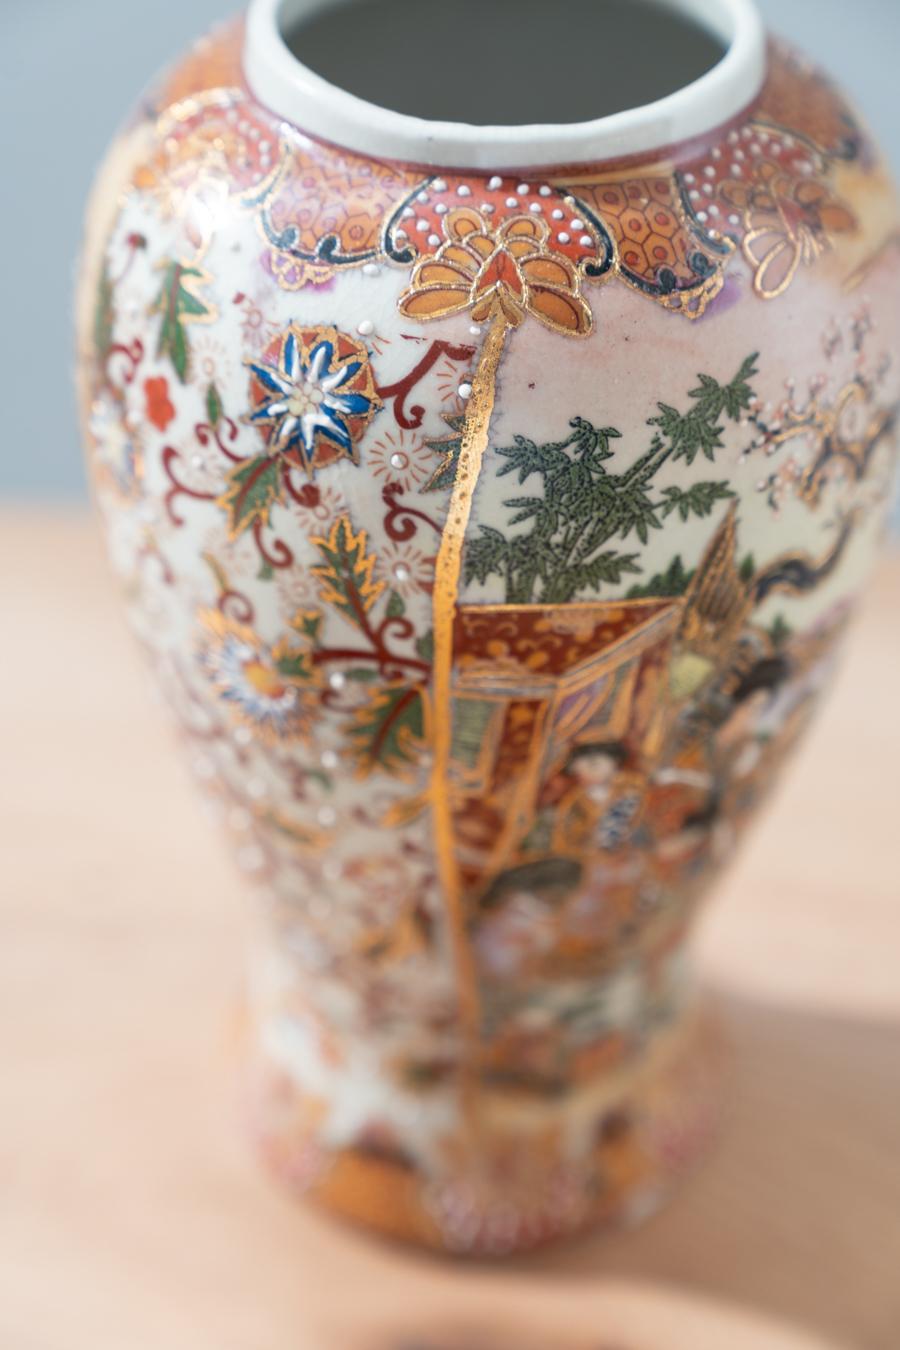 Vases en céramique chinoise Royal Satsuma décorés à la main, années 1960
Style vintage
Période de conception 1960 - 1969
Période de production Inconnue, 1960 - 1969
Année de production 1960
Pays de production Chine
Créateur Royal Satsuma
Fabricant